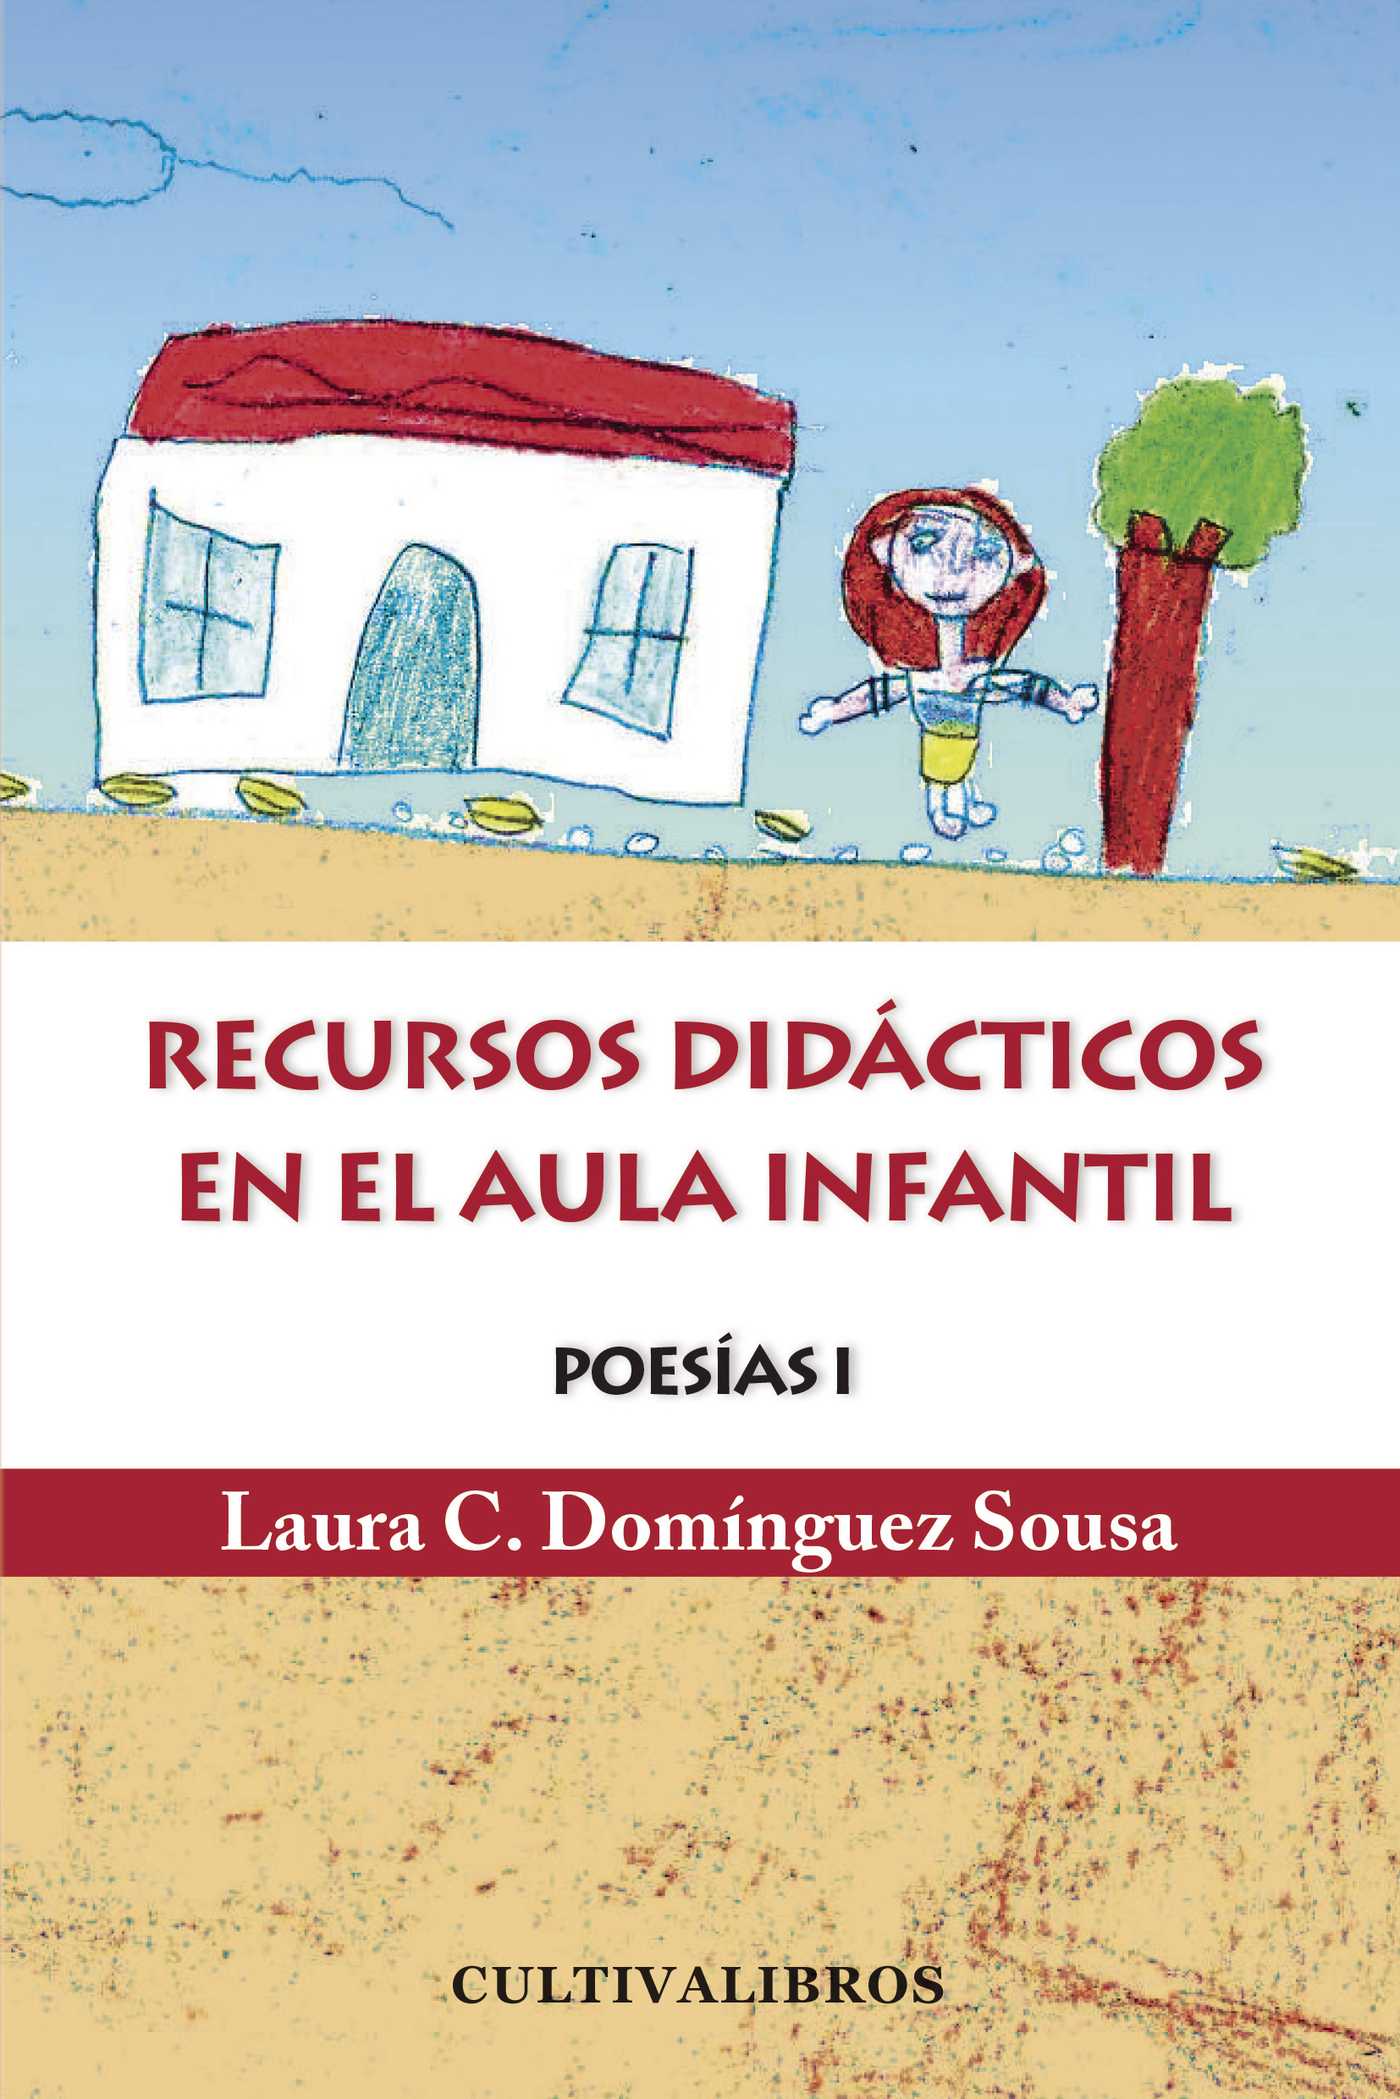 POESÍA I : RECURSO DIDÁCTICOS EN EL AULA INFANTIL